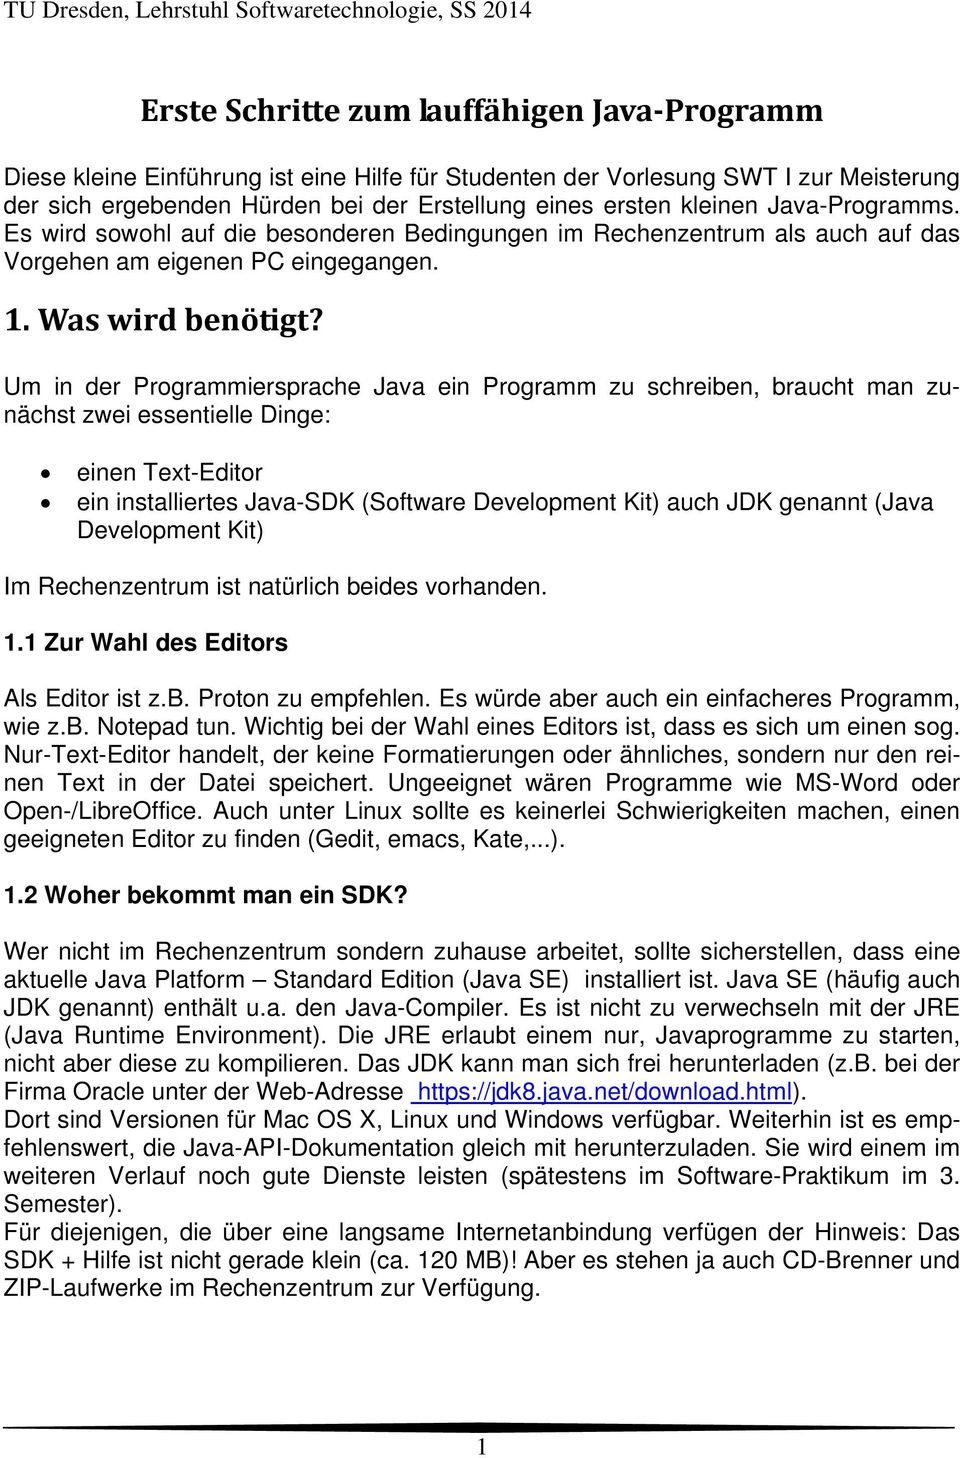 Um in der Programmiersprache Java ein Programm zu schreiben, braucht man zunächst zwei essentielle Dinge: einen Text-Editor ein installiertes Java-SDK (Software Development Kit) auch JDK genannt